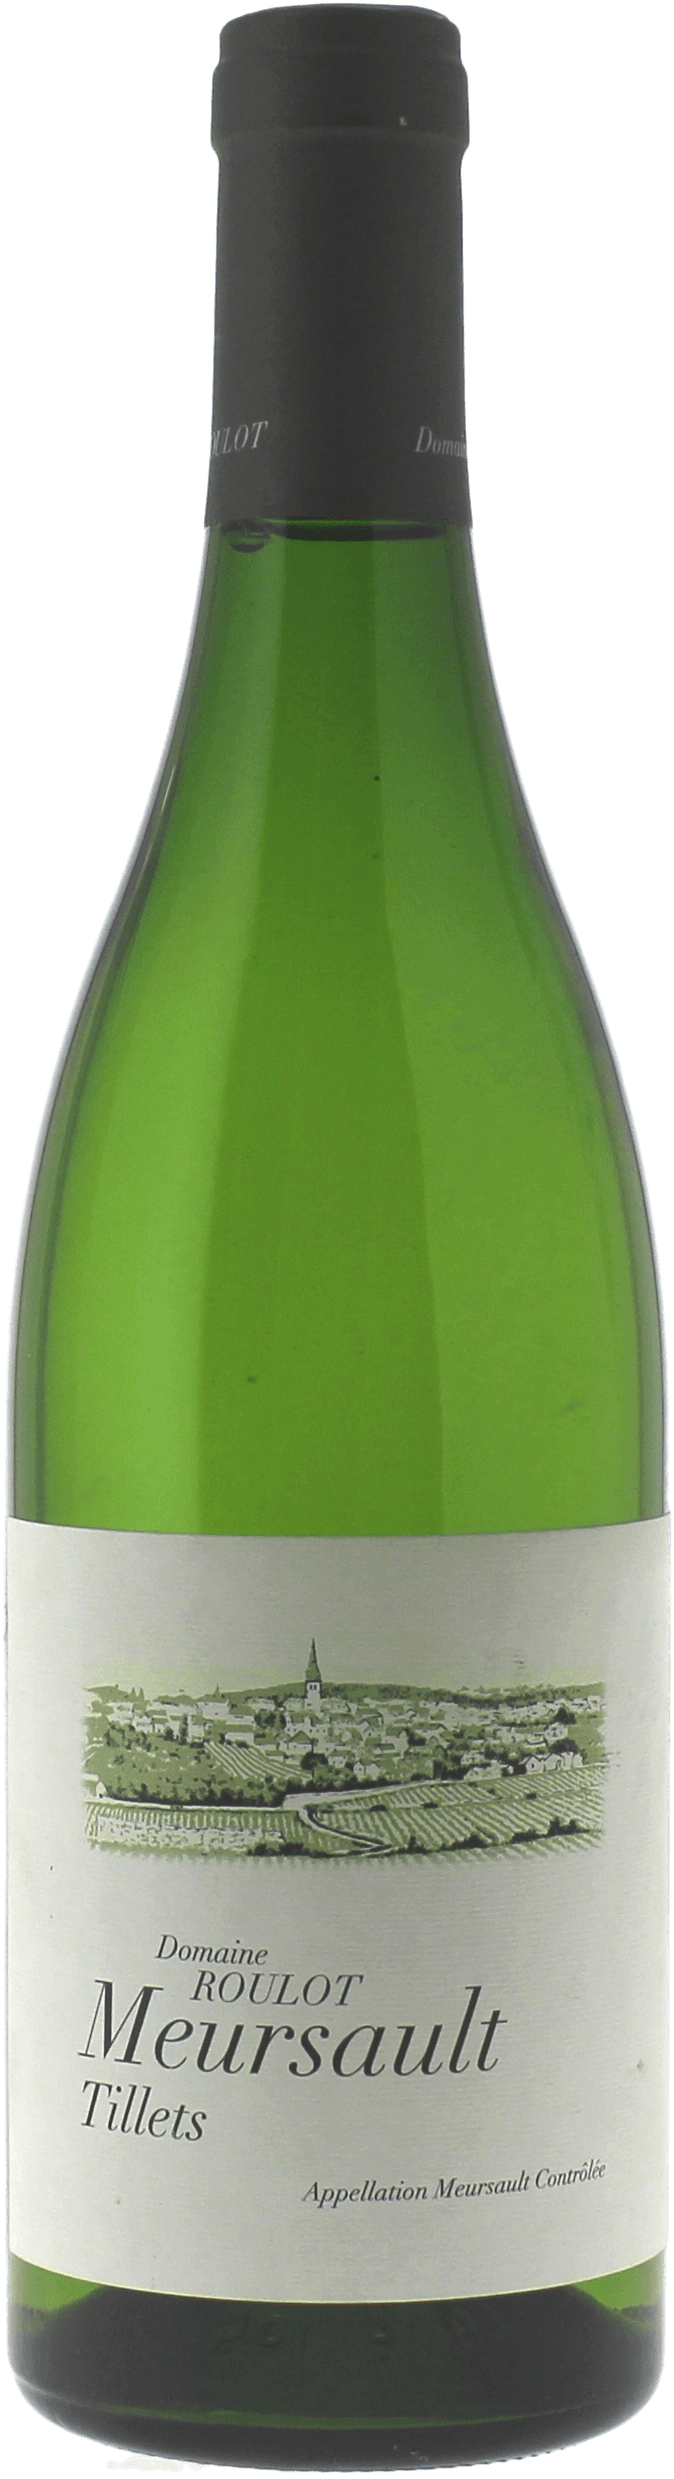 Meursault tillets 2015 Domaine ROULOT Jean Marc, Bourgogne blanc